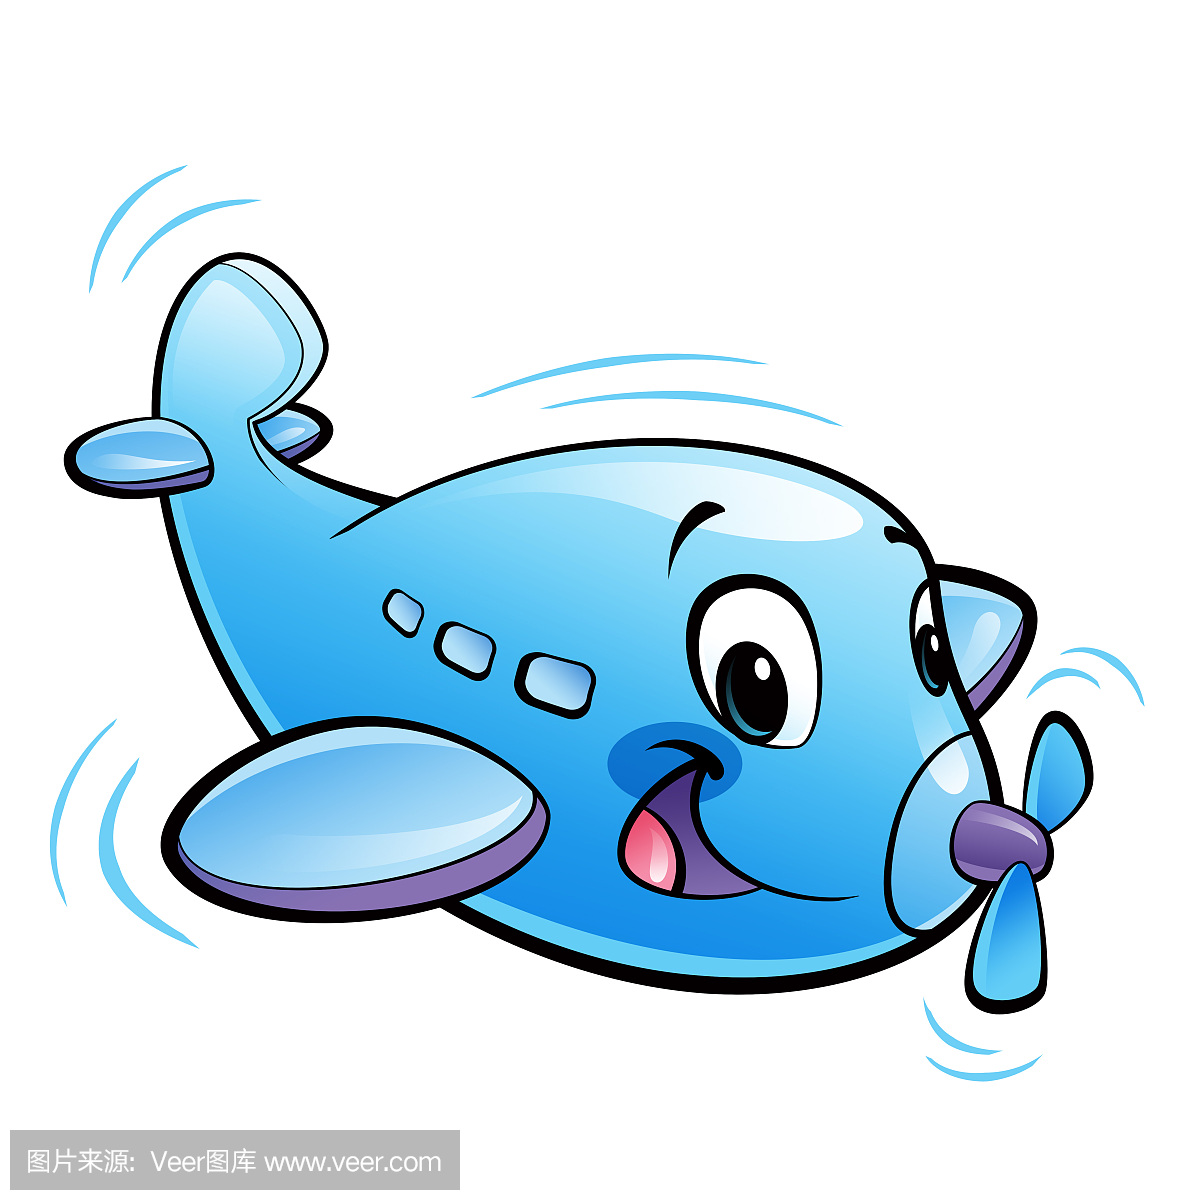 婴儿可爱卡通蓝色飞机角色与螺旋桨飞行微笑